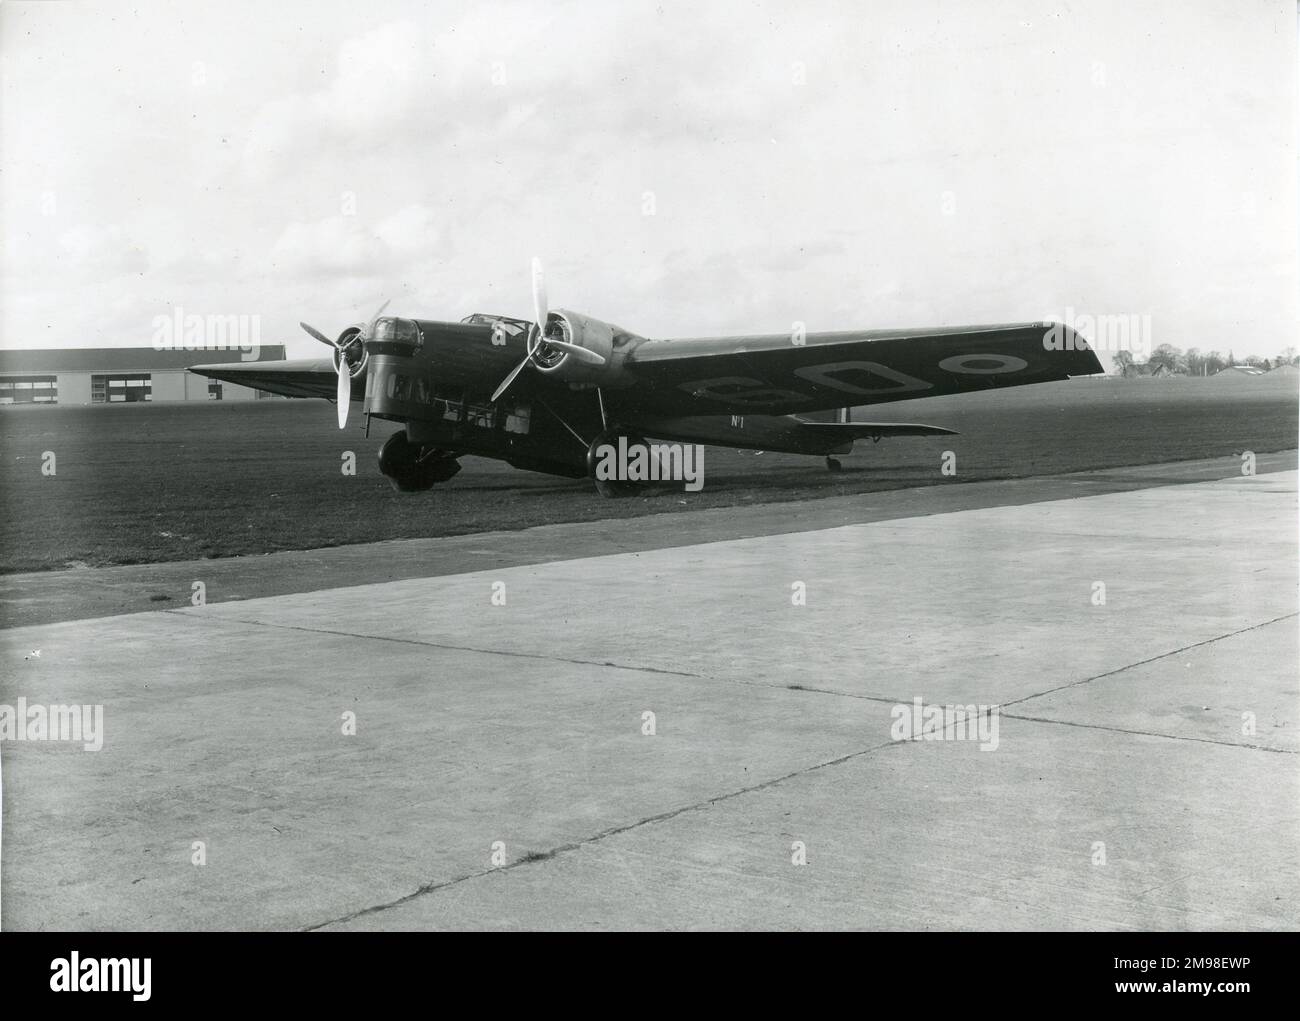 Amiot 143 medium bomber. Stock Photo